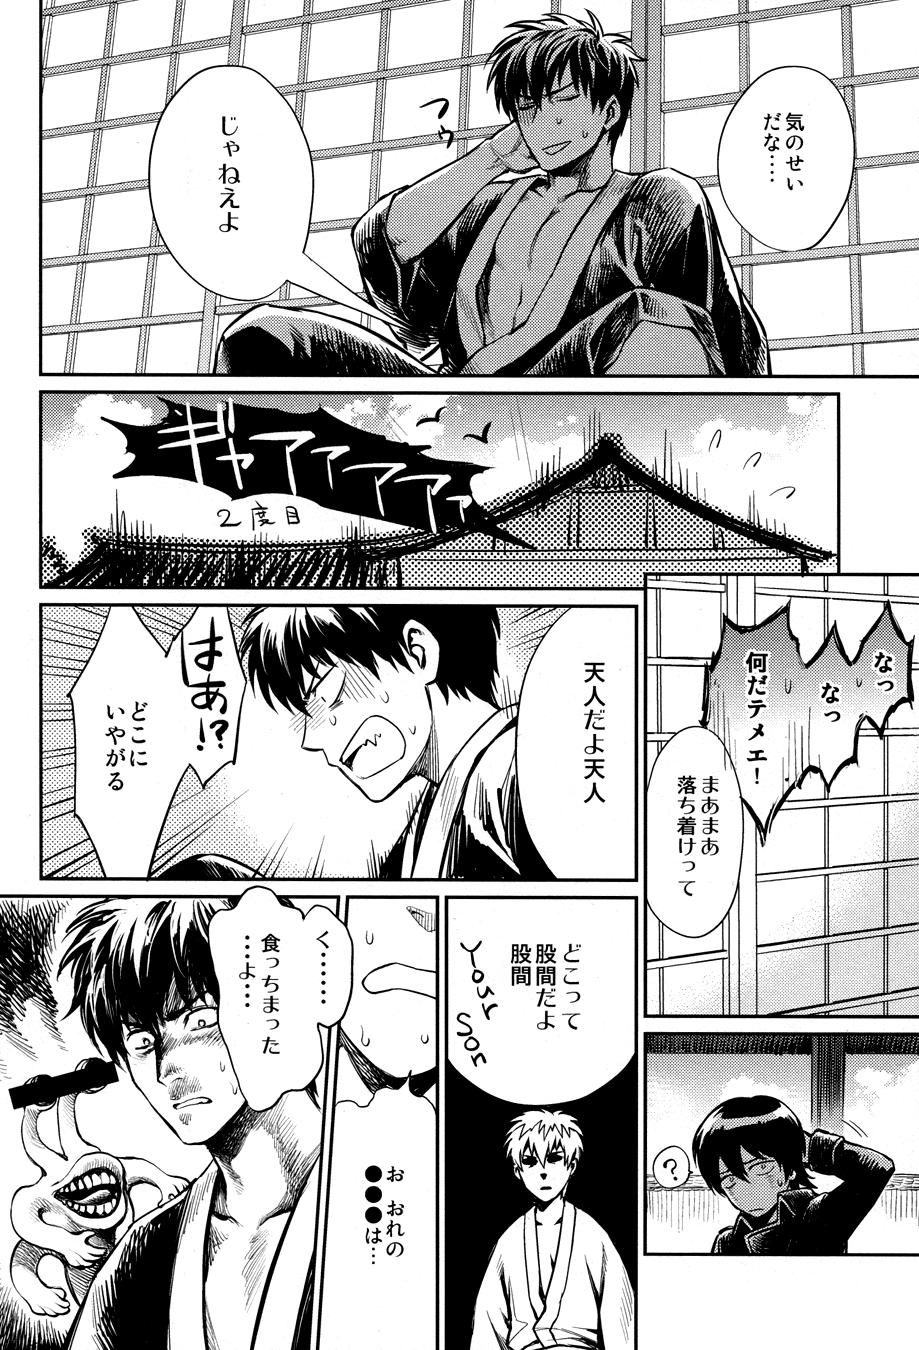 Large No Talking Man - Gintama One - Page 10